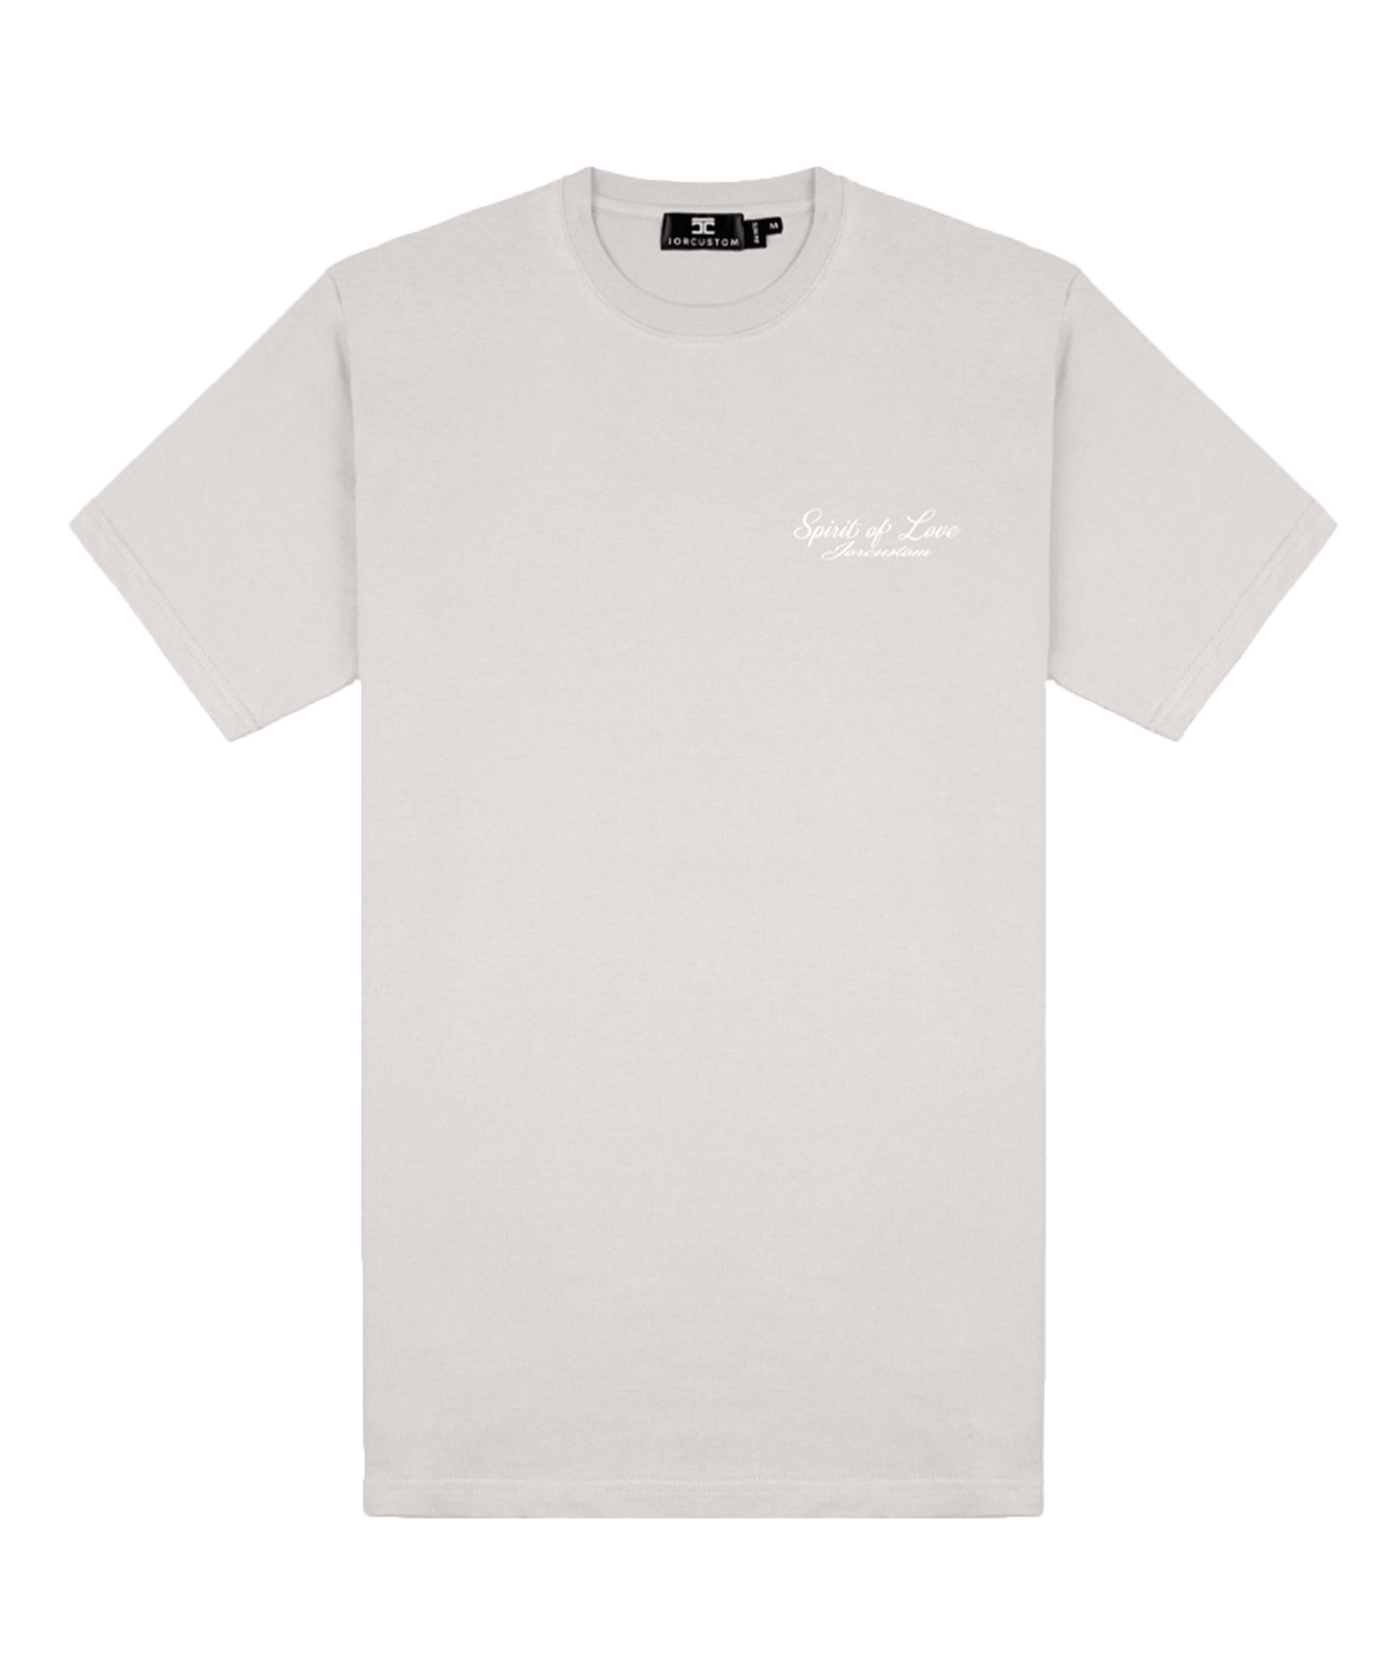 JorCustom - Spiritoflove - Slim Fit T-shirt - Lt Grey